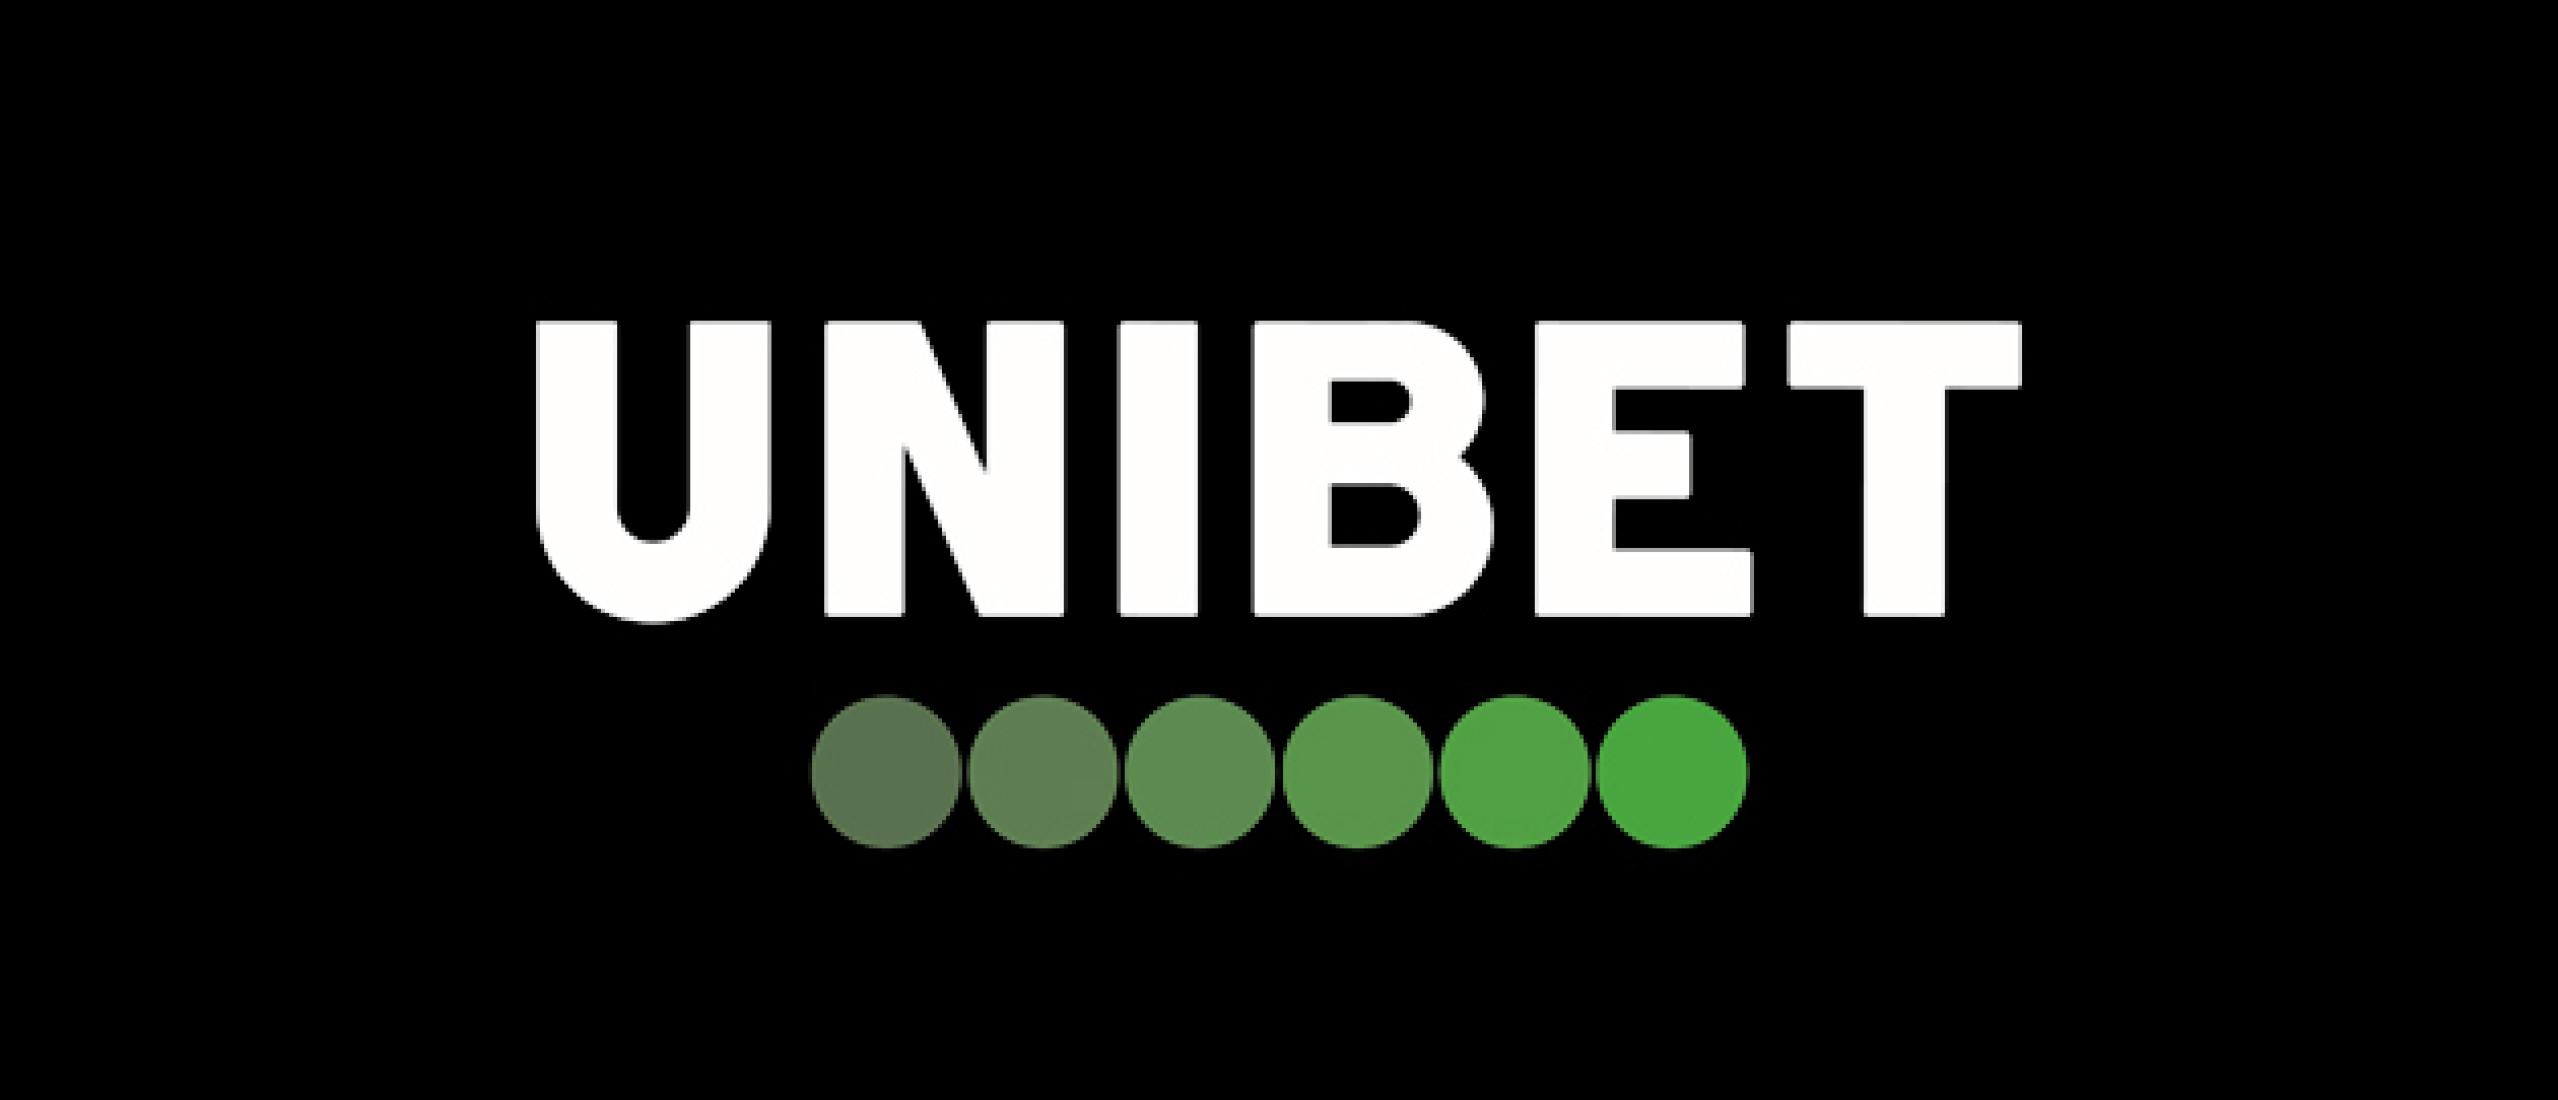 Unibet is live in Nederland!